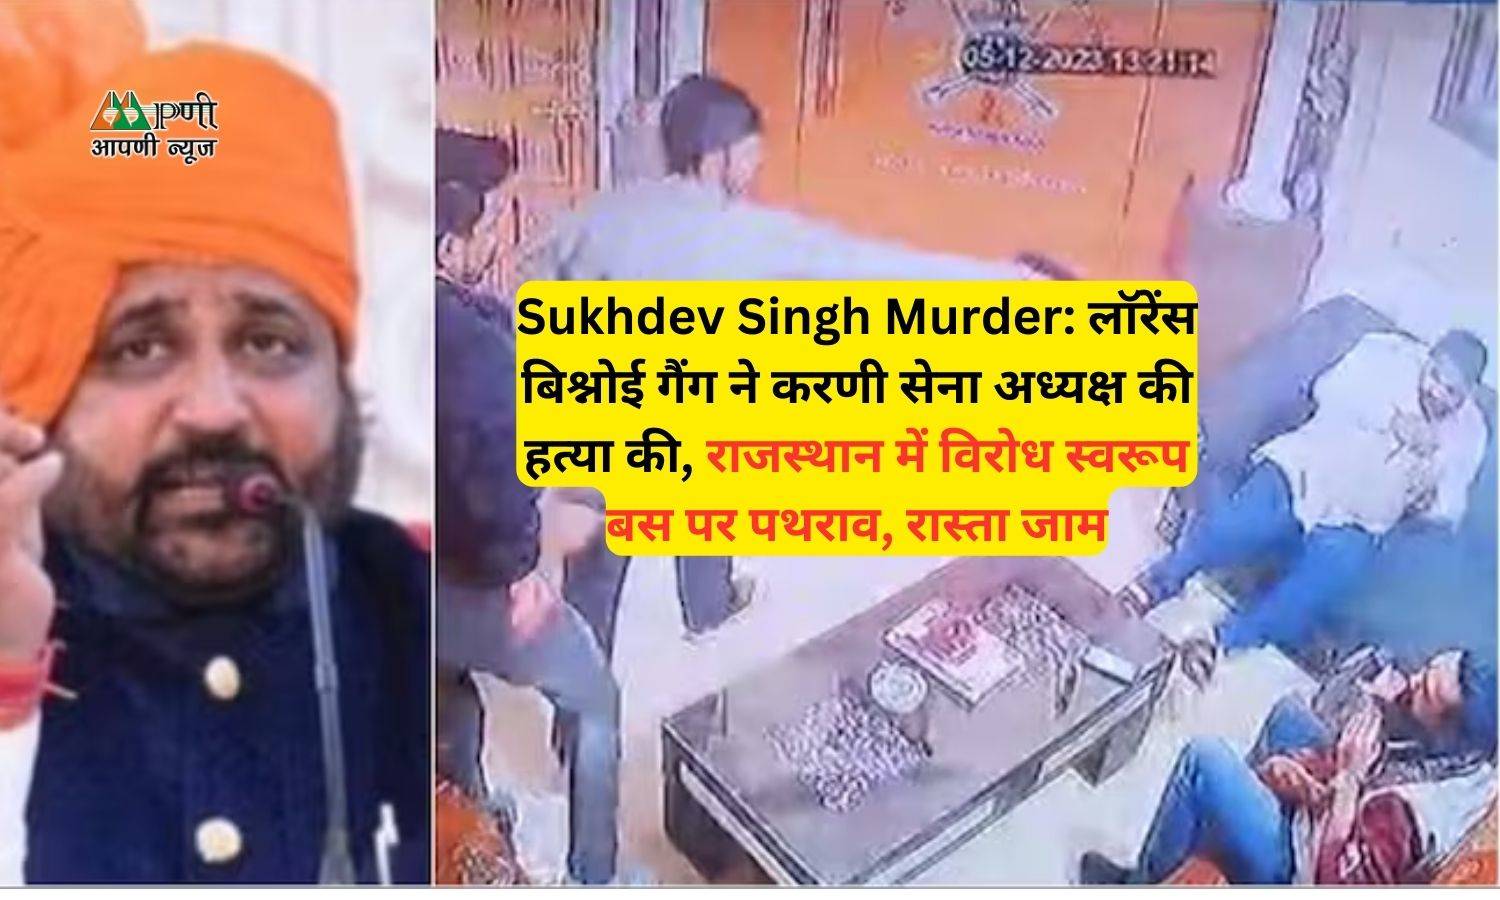 Sukhdev Singh Murder: लॉरेंस बिश्नोई गैंग ने करणी सेना अध्यक्ष की हत्या की, राजस्थान में विरोध स्वरूप बस पर पथराव, रास्ता जाम